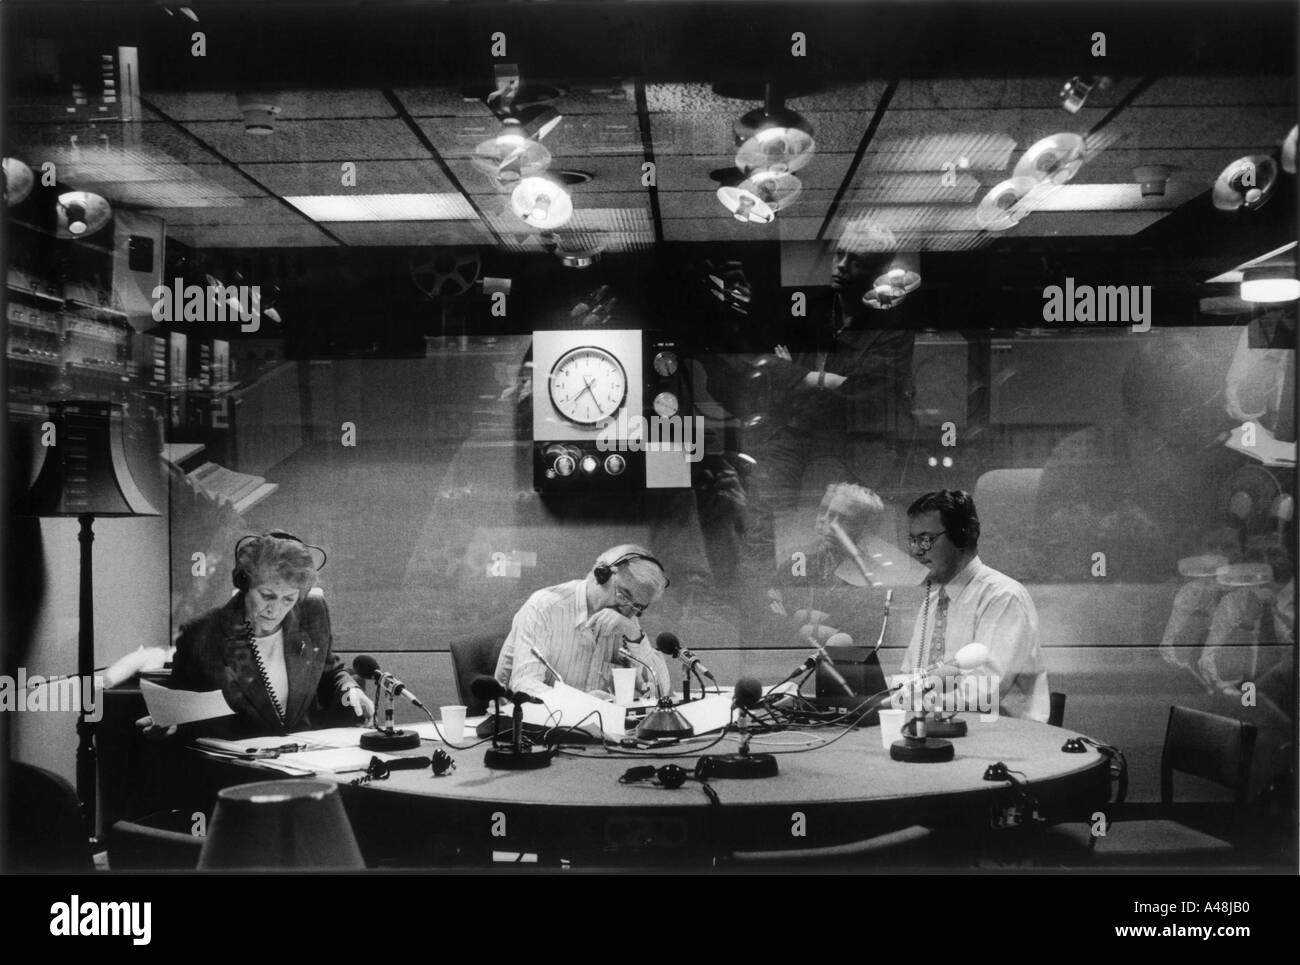 John Humphries sue macgregor et journaliste sportif nick mullin dans le BBC Radio 4 studio Programme d'aujourd'hui Banque D'Images